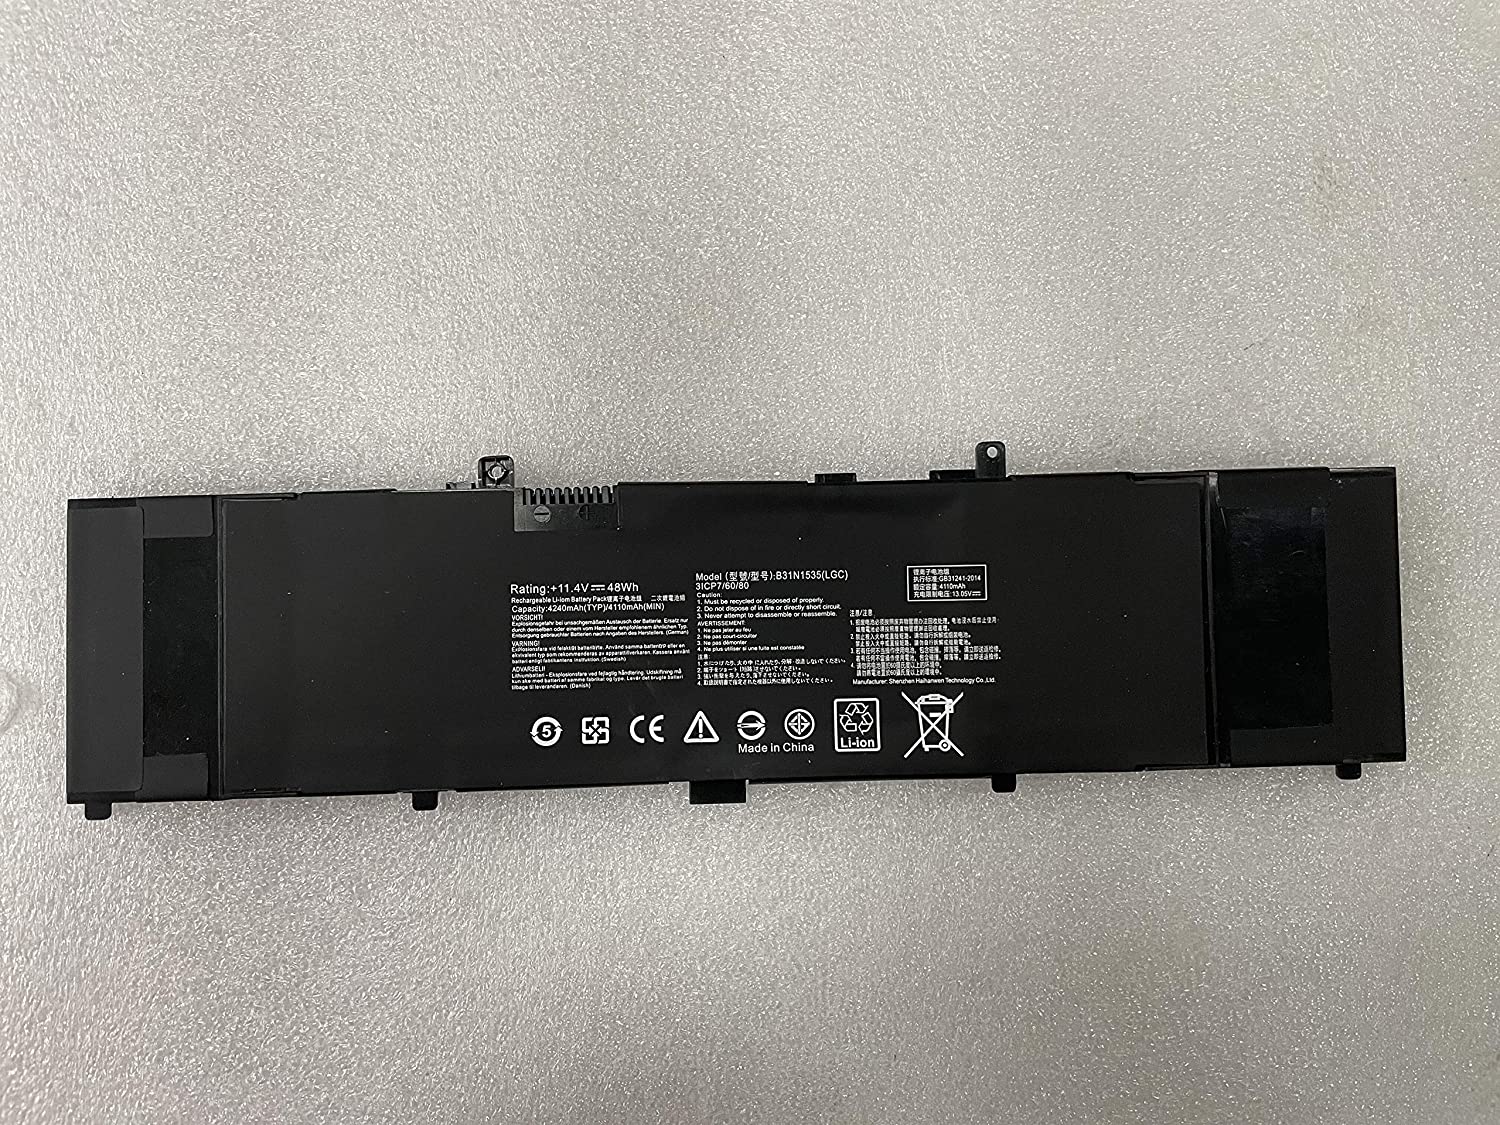 B31N1535 Original laptop battery for asus UX410 RX310U UX310UA UX310UQ U4000U U4000UQ RX410U U3000UQ 11.4V 4110mAh/48Wh